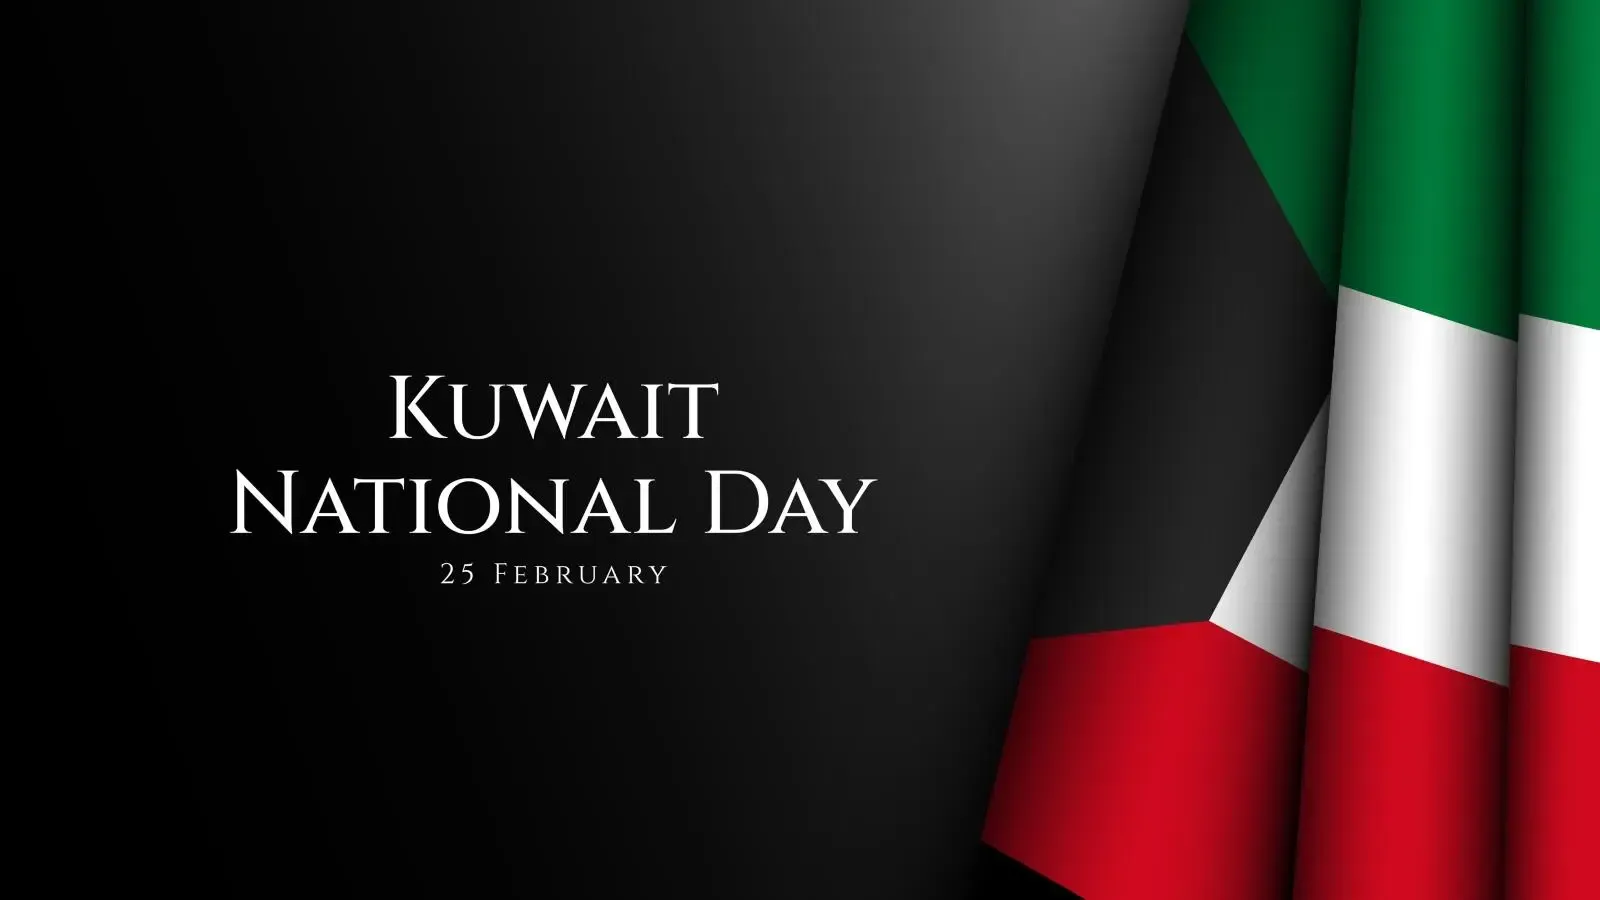 عبارات عن العيد الوطني الكويتي 2023